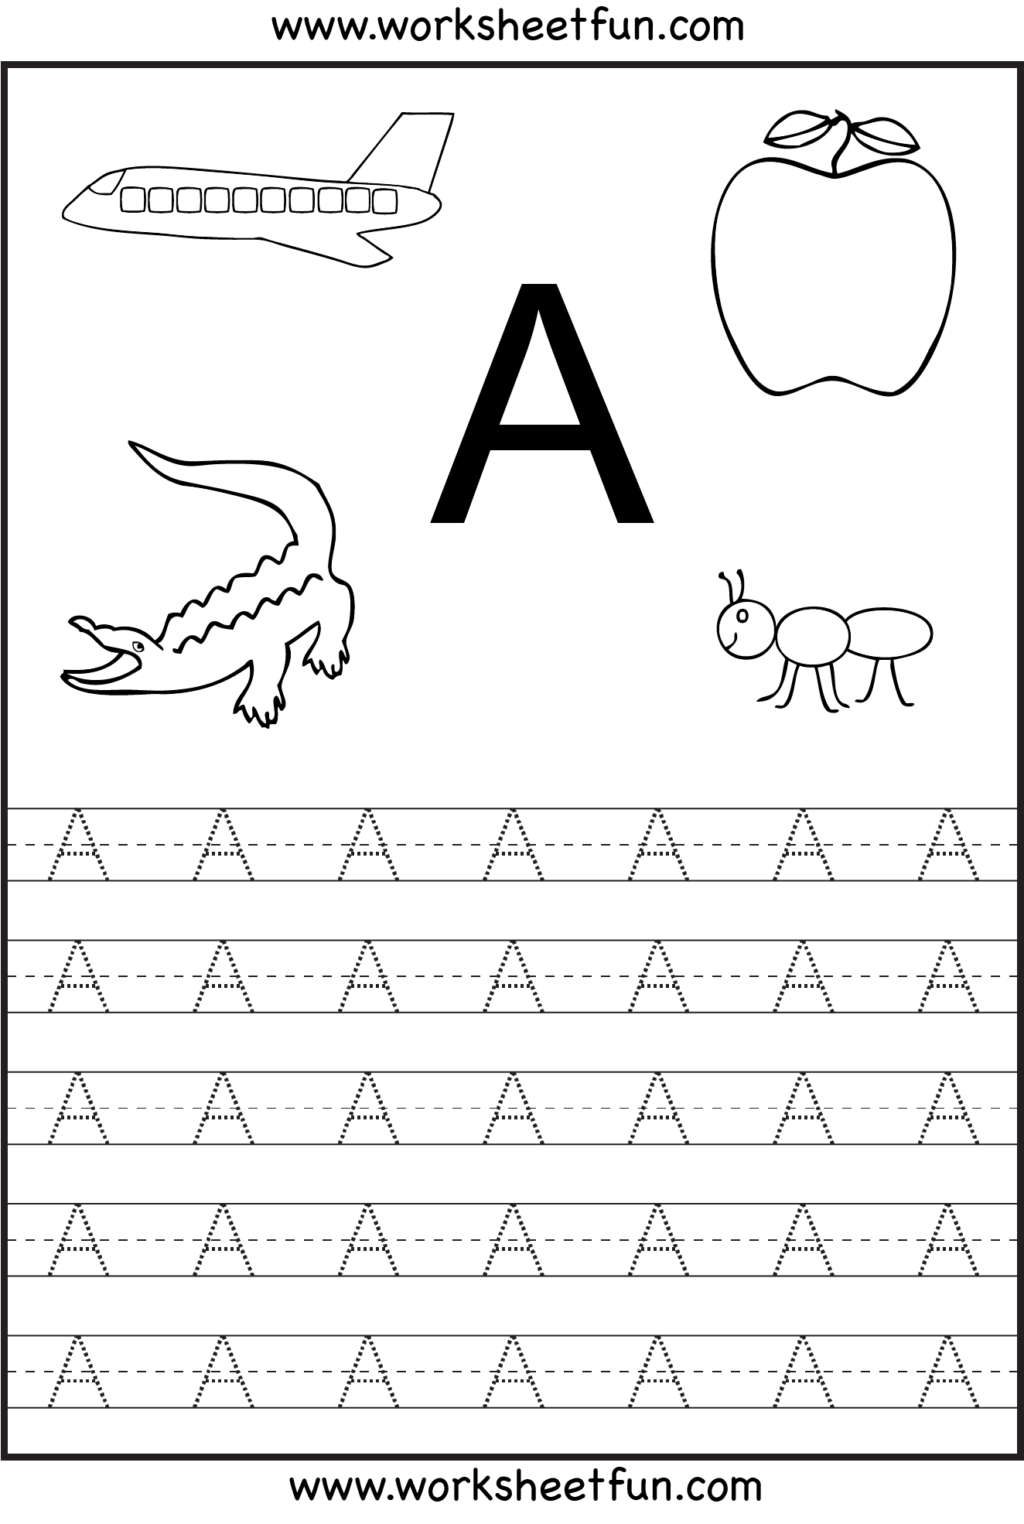 Worksheet ~ Preschool Worksheetsreeor Preschoolers Printable within Pre K Alphabet Worksheets